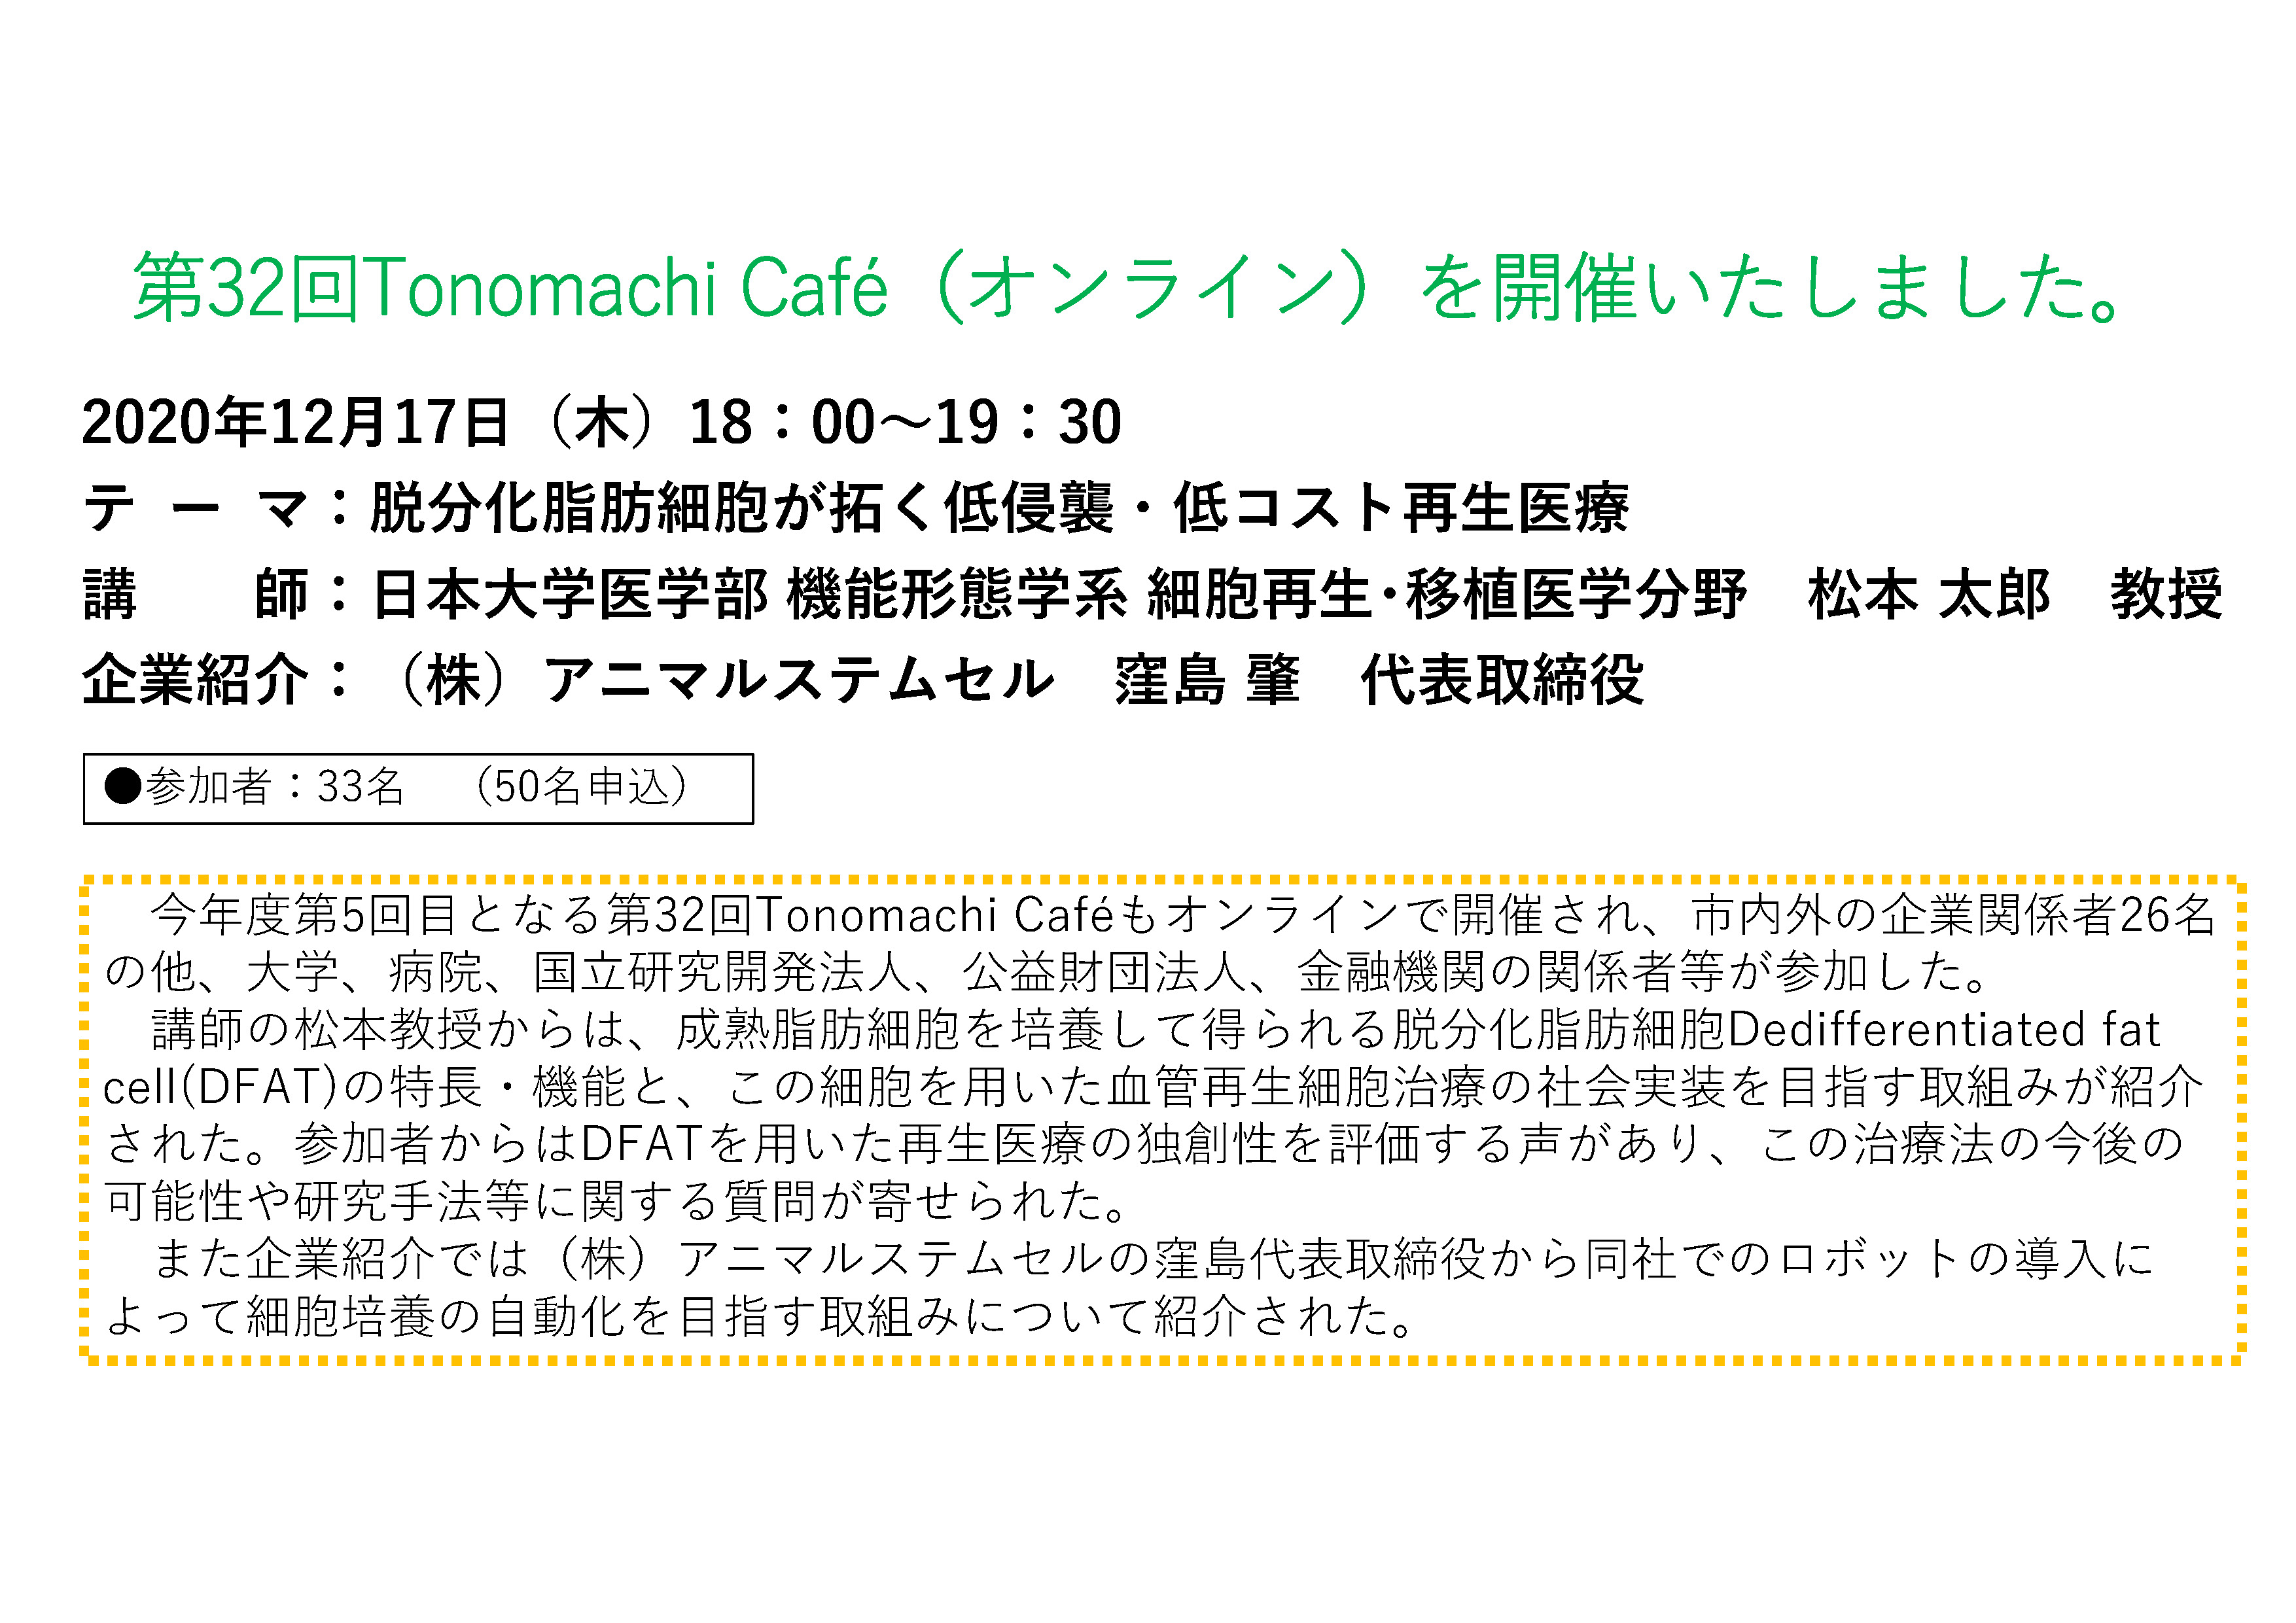 The 32th Tonomachi café online version image